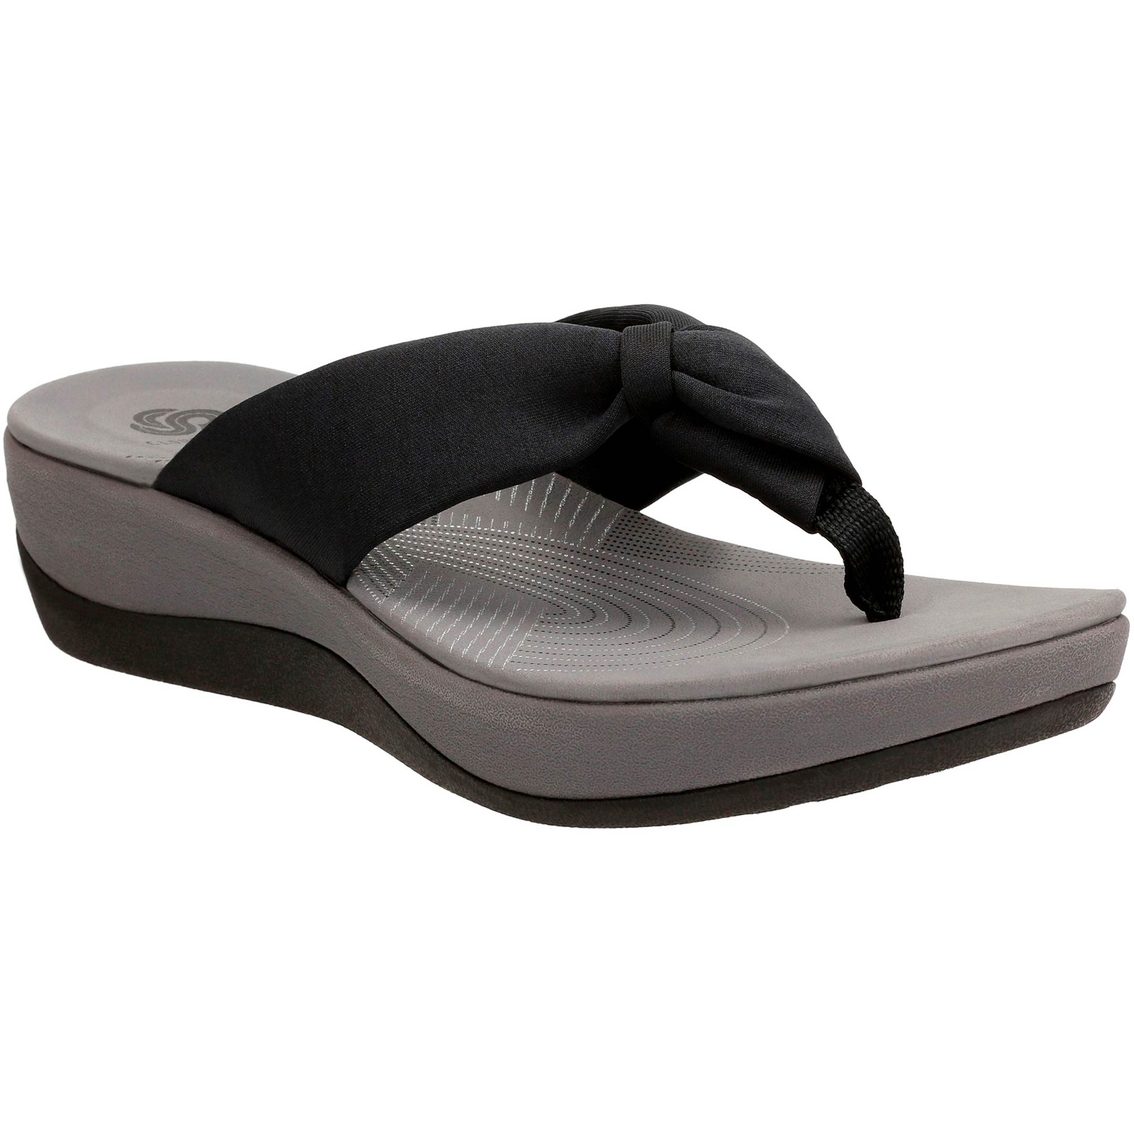 Clarks Arla Glison Cloud Stepper Flip Flops | Sandals | Shoes | Shop ...